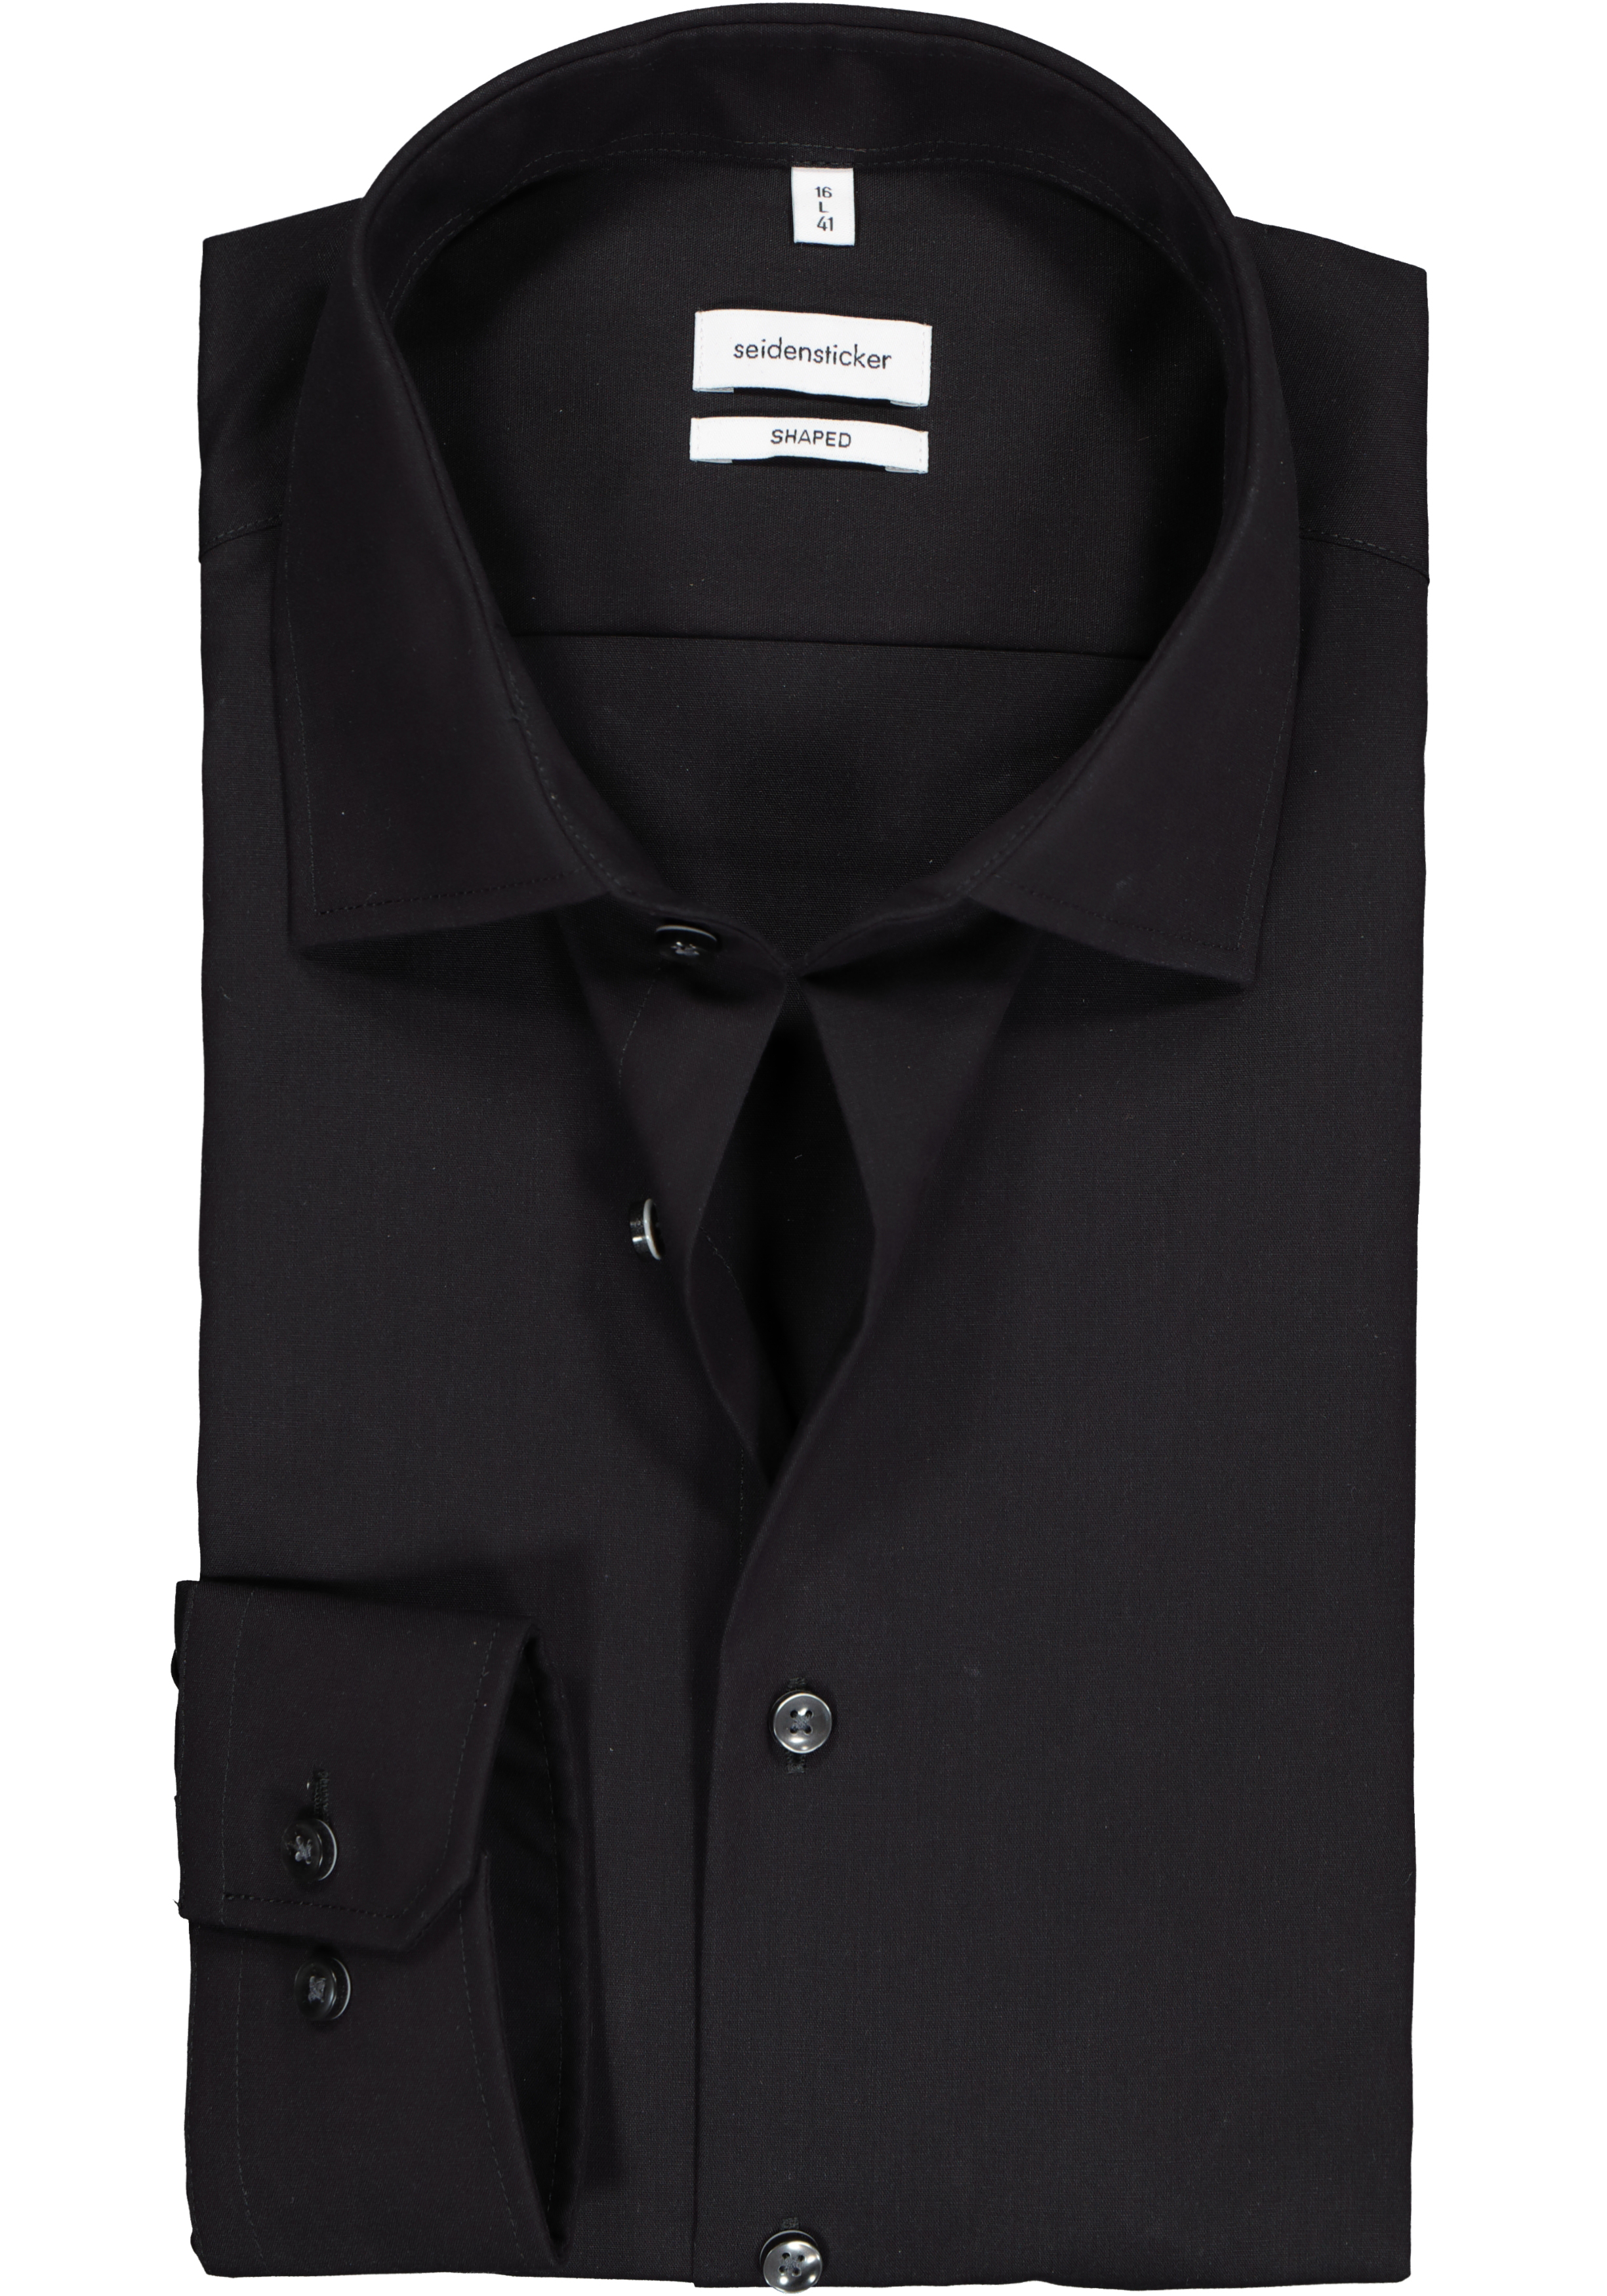 Seidensticker shaped fit overhemd, mouwlengte 7, zwart